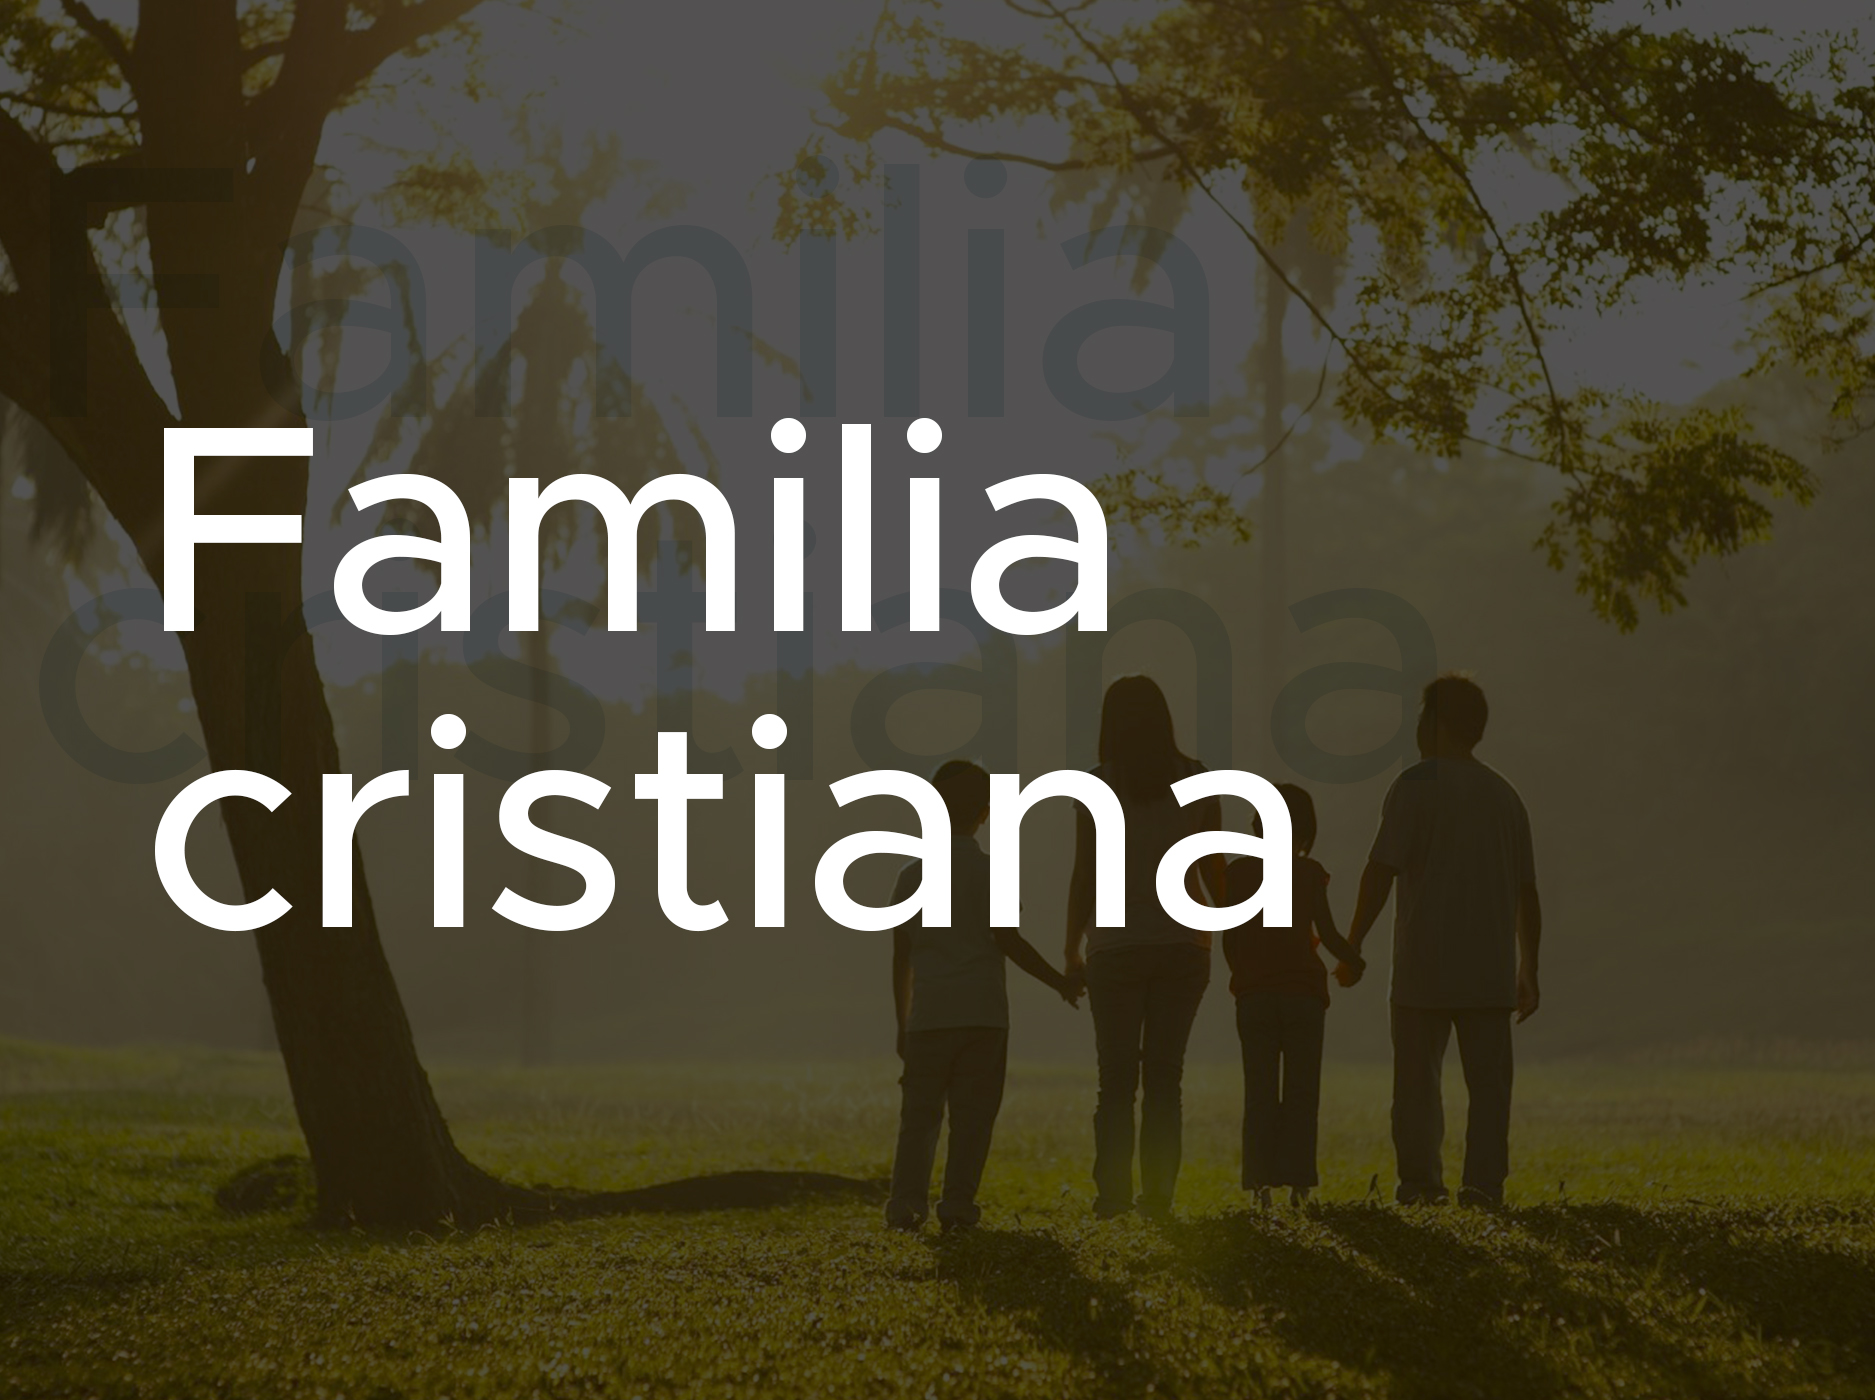 Familia cristiana